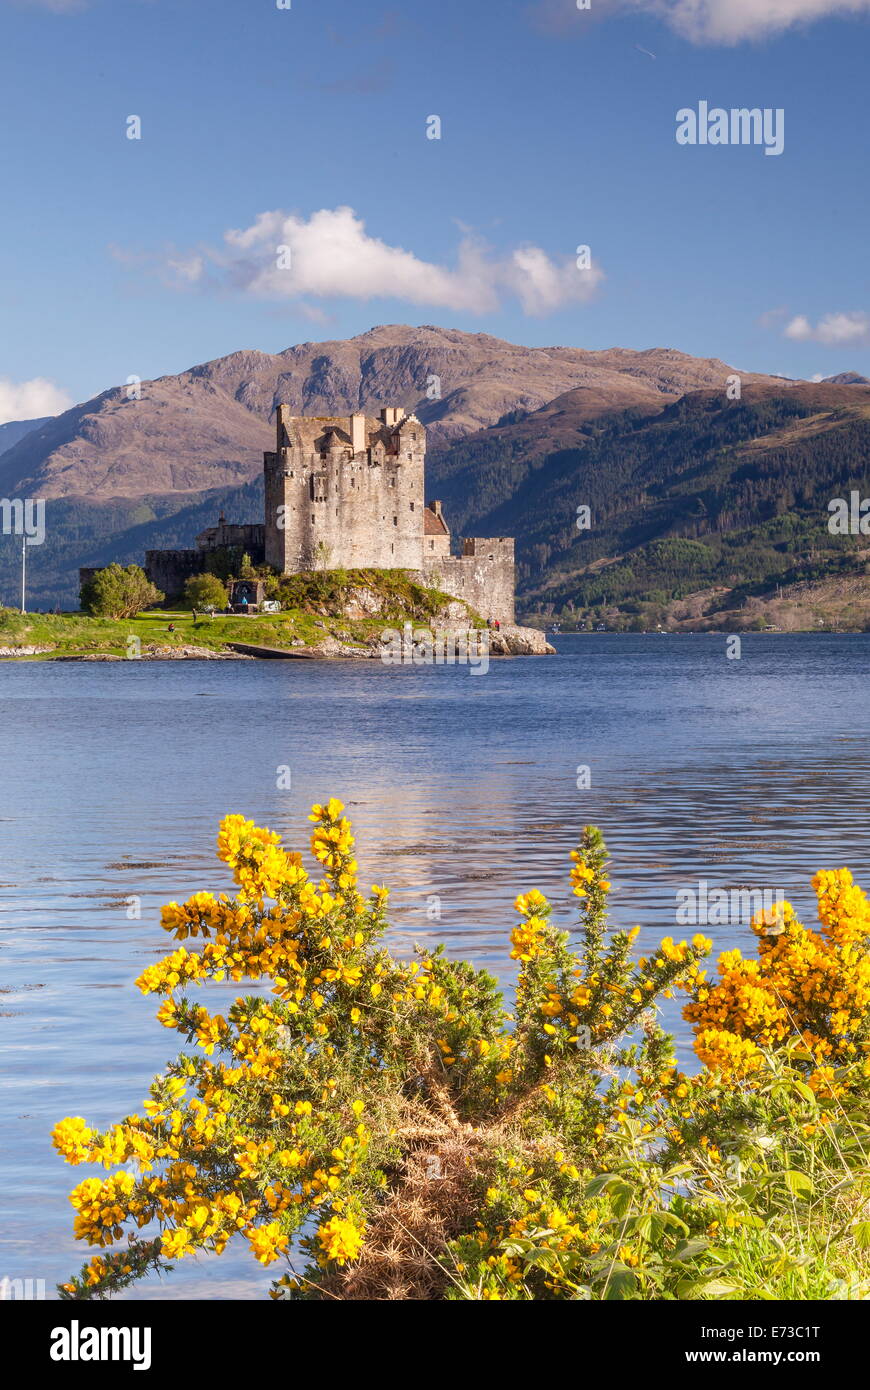 Le château d'Eilean Donan et Loch Duich, les Highlands, Ecosse, Royaume-Uni, Europe Banque D'Images